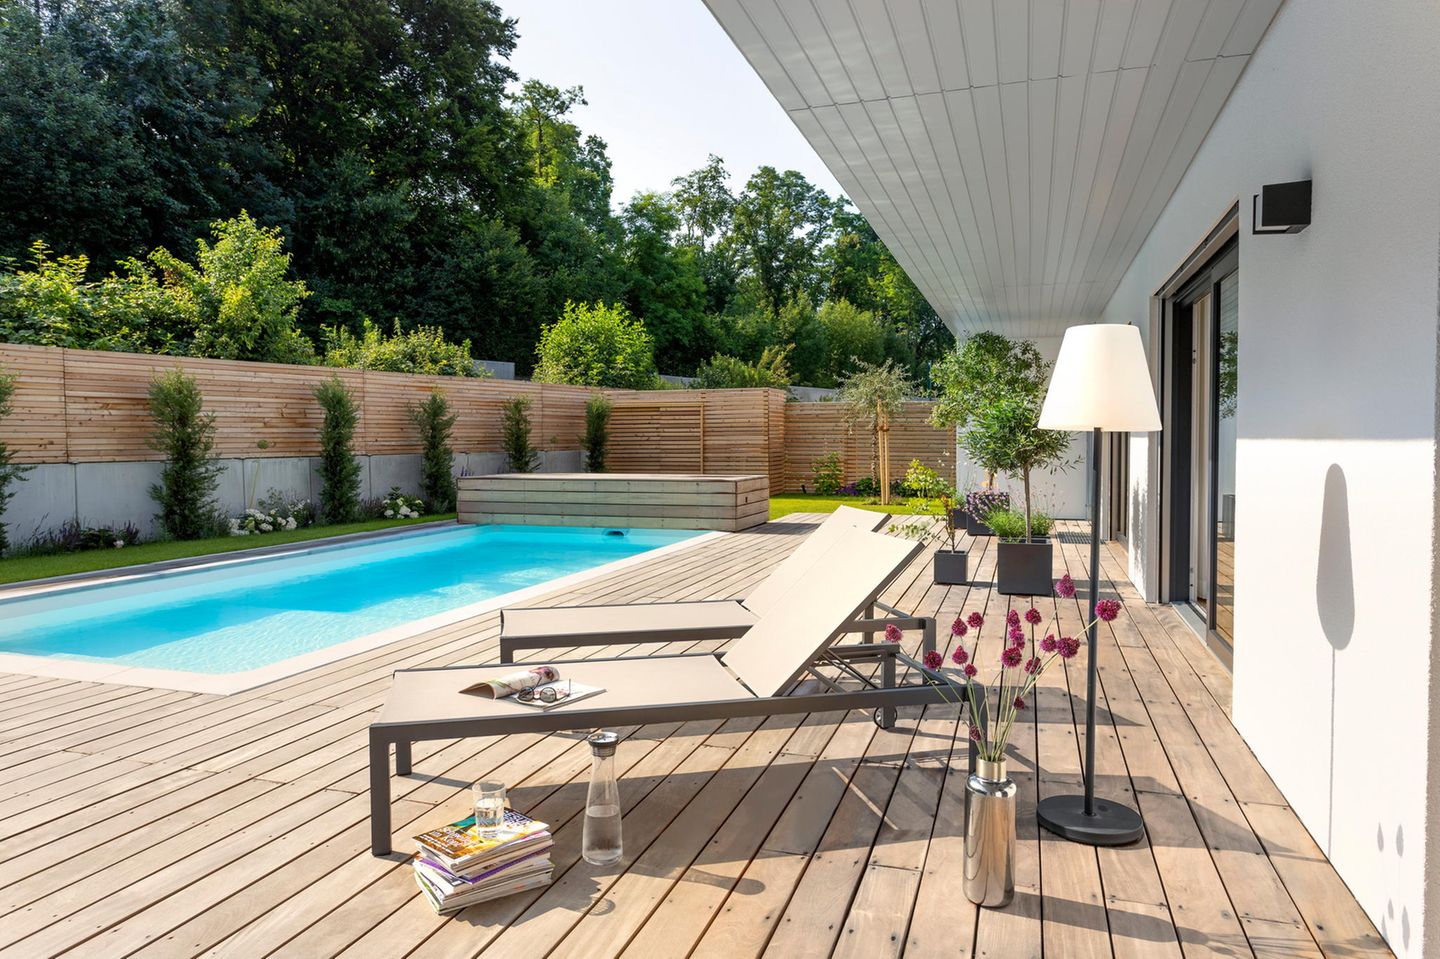 Auf einer Terrasse auf Holz stehen zwei Liegestühle vor einem Pool